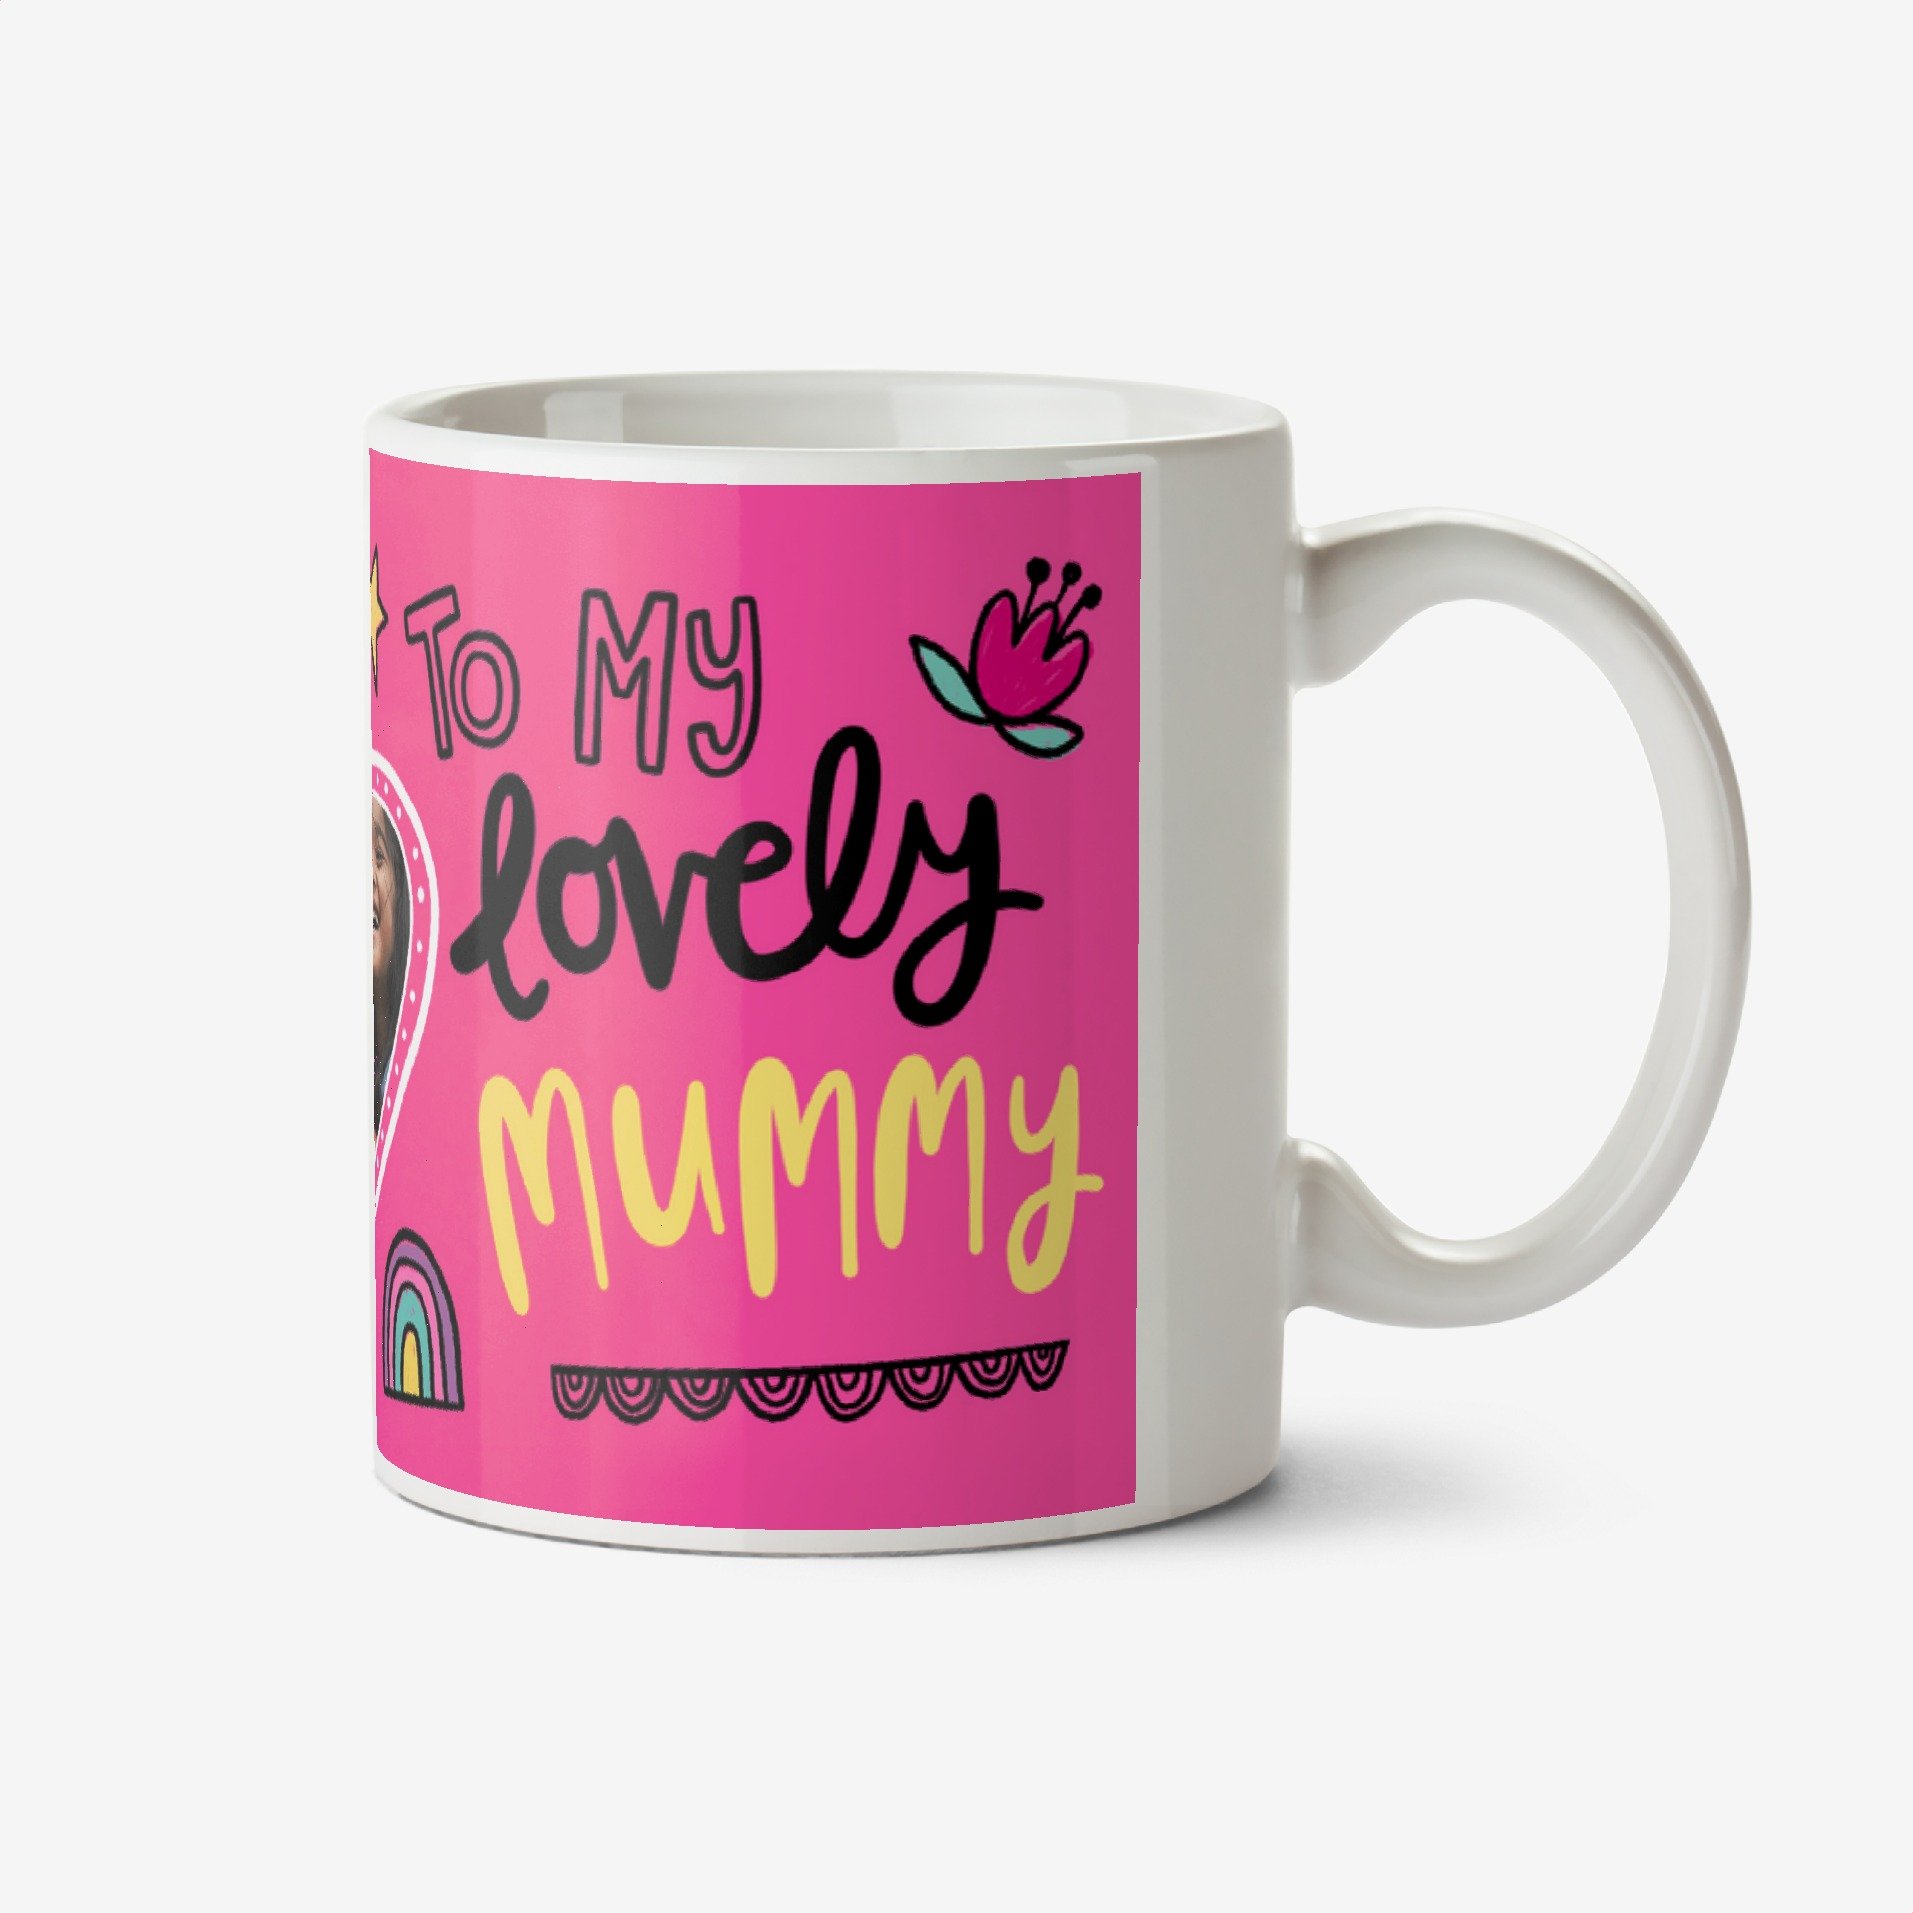 Moonpig To My Lovely Mummy Photo Upload Mug Ceramic Mug